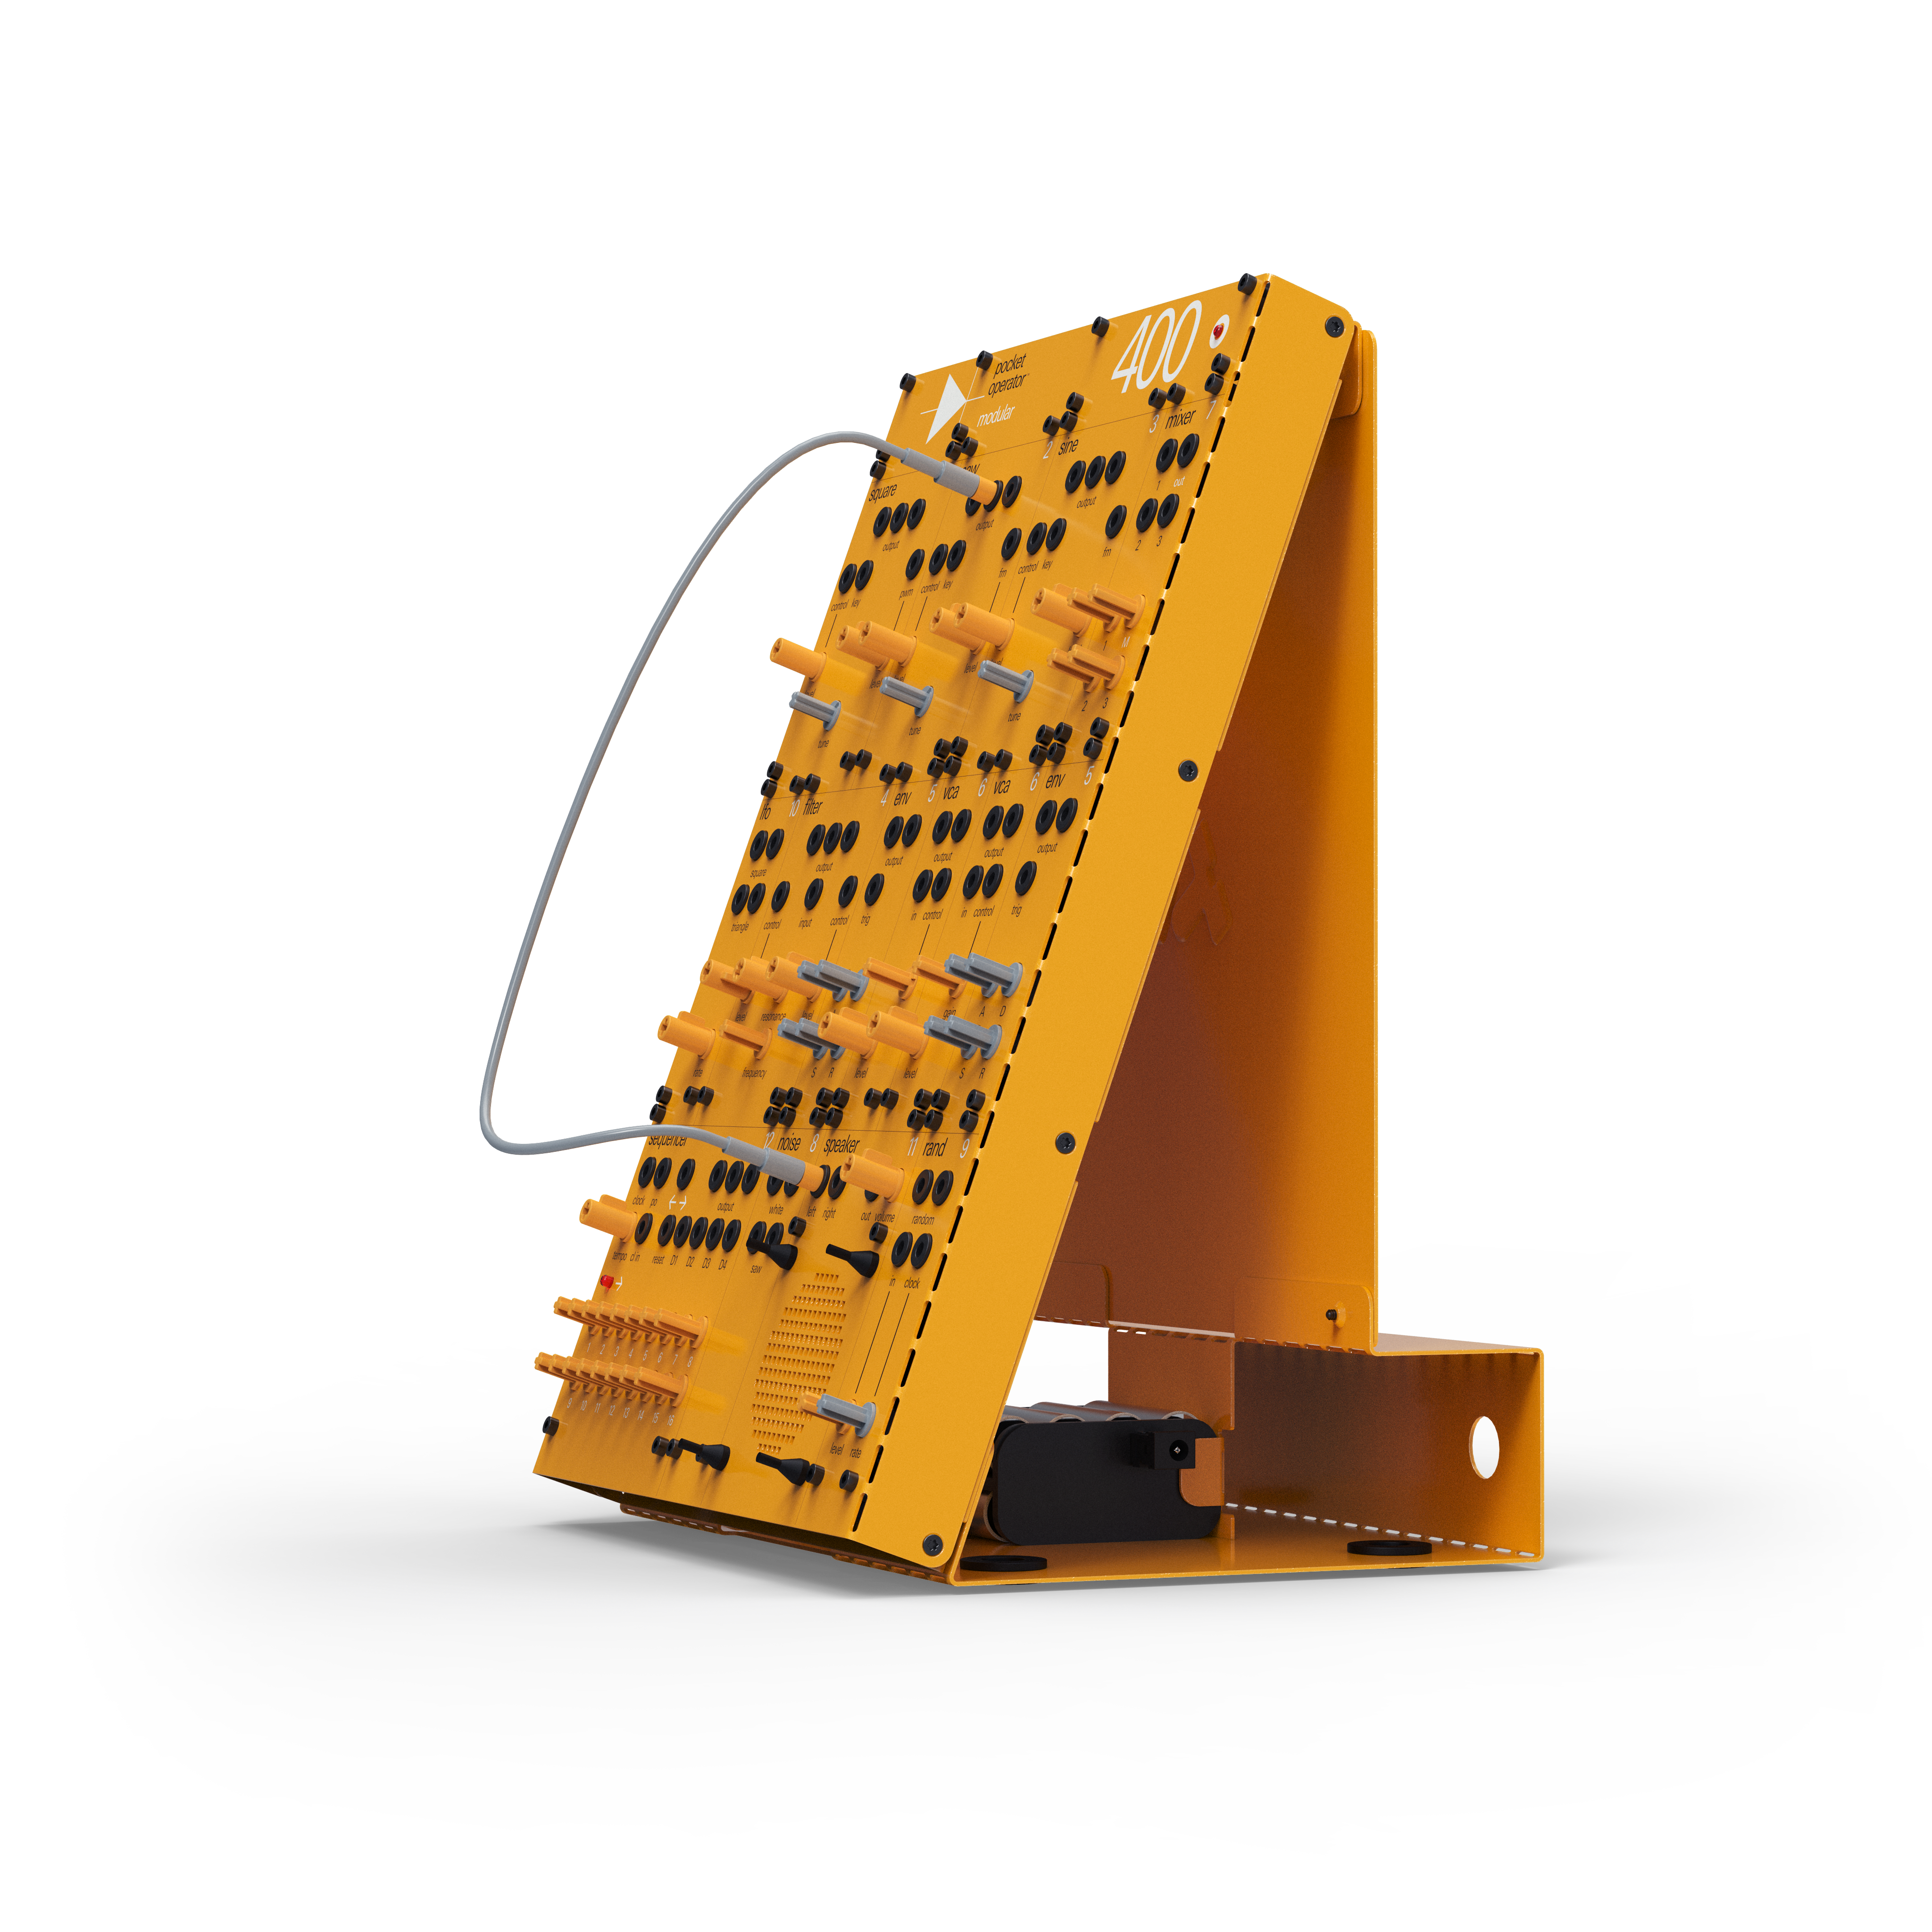 Teenage Engineering Pocket Operator Modular 400 Синтезаторные модули